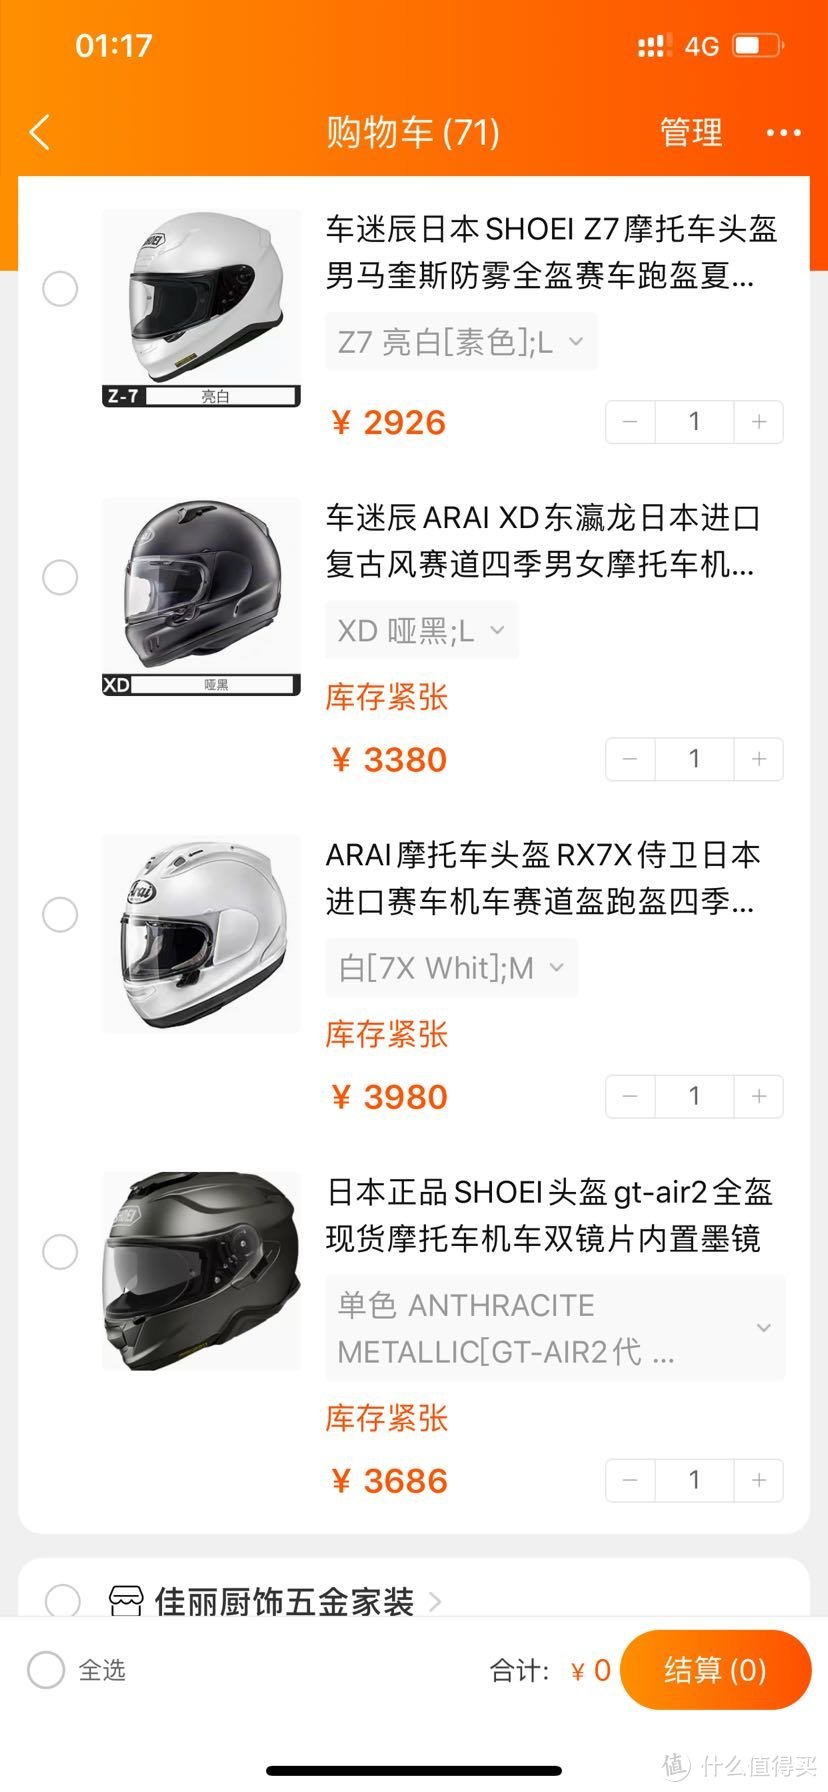 摩托车头盔 Arai XD 日亚购